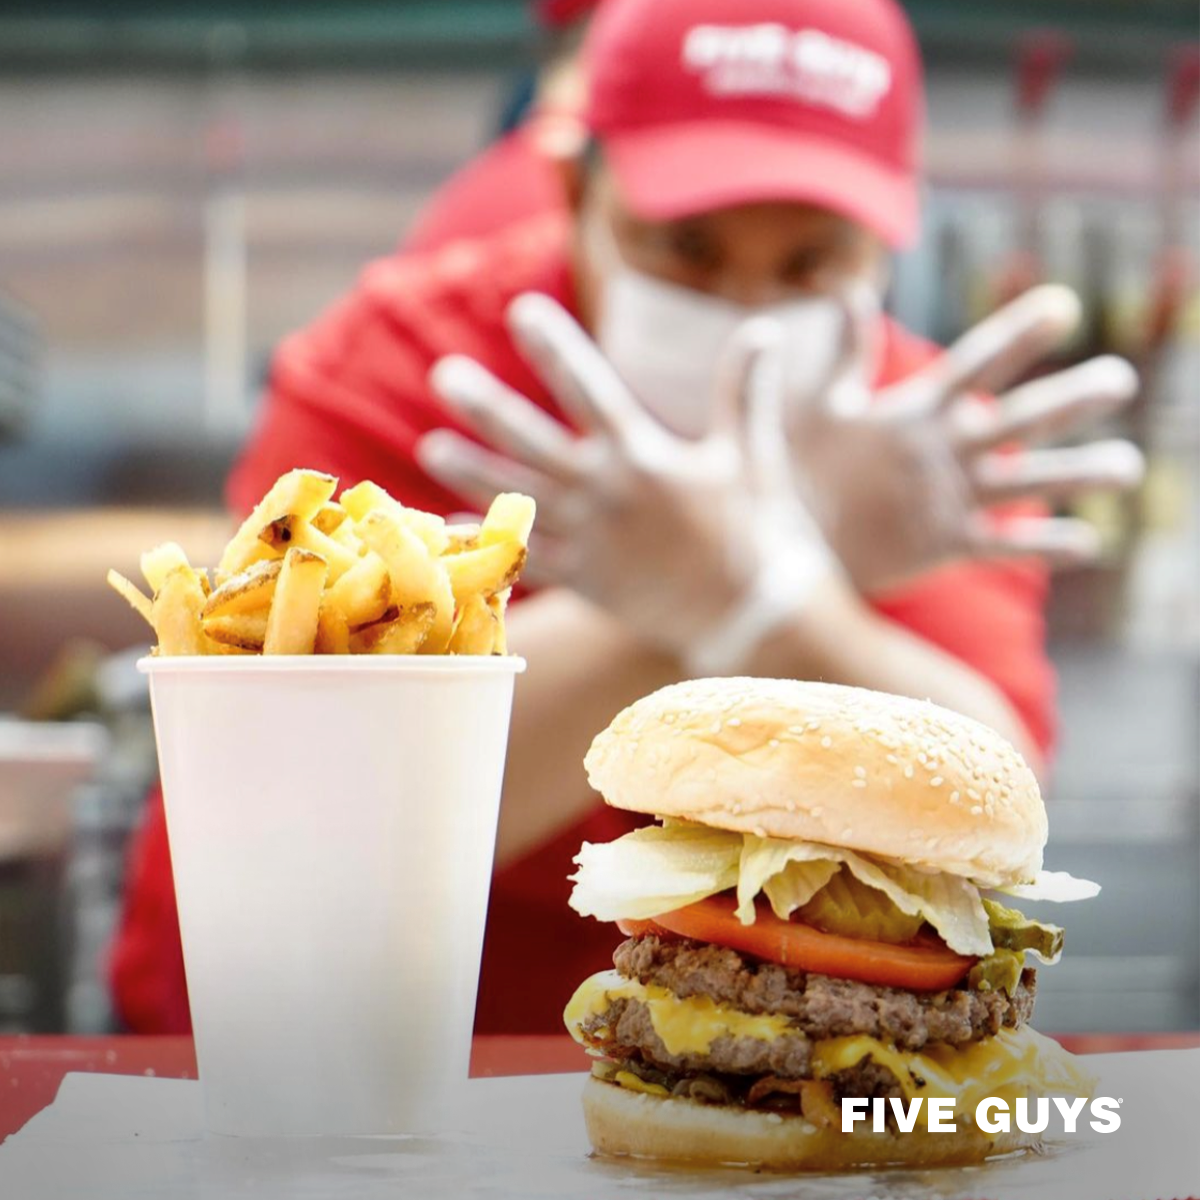 burger được làm với chất lượng của thương hiệu Five guys